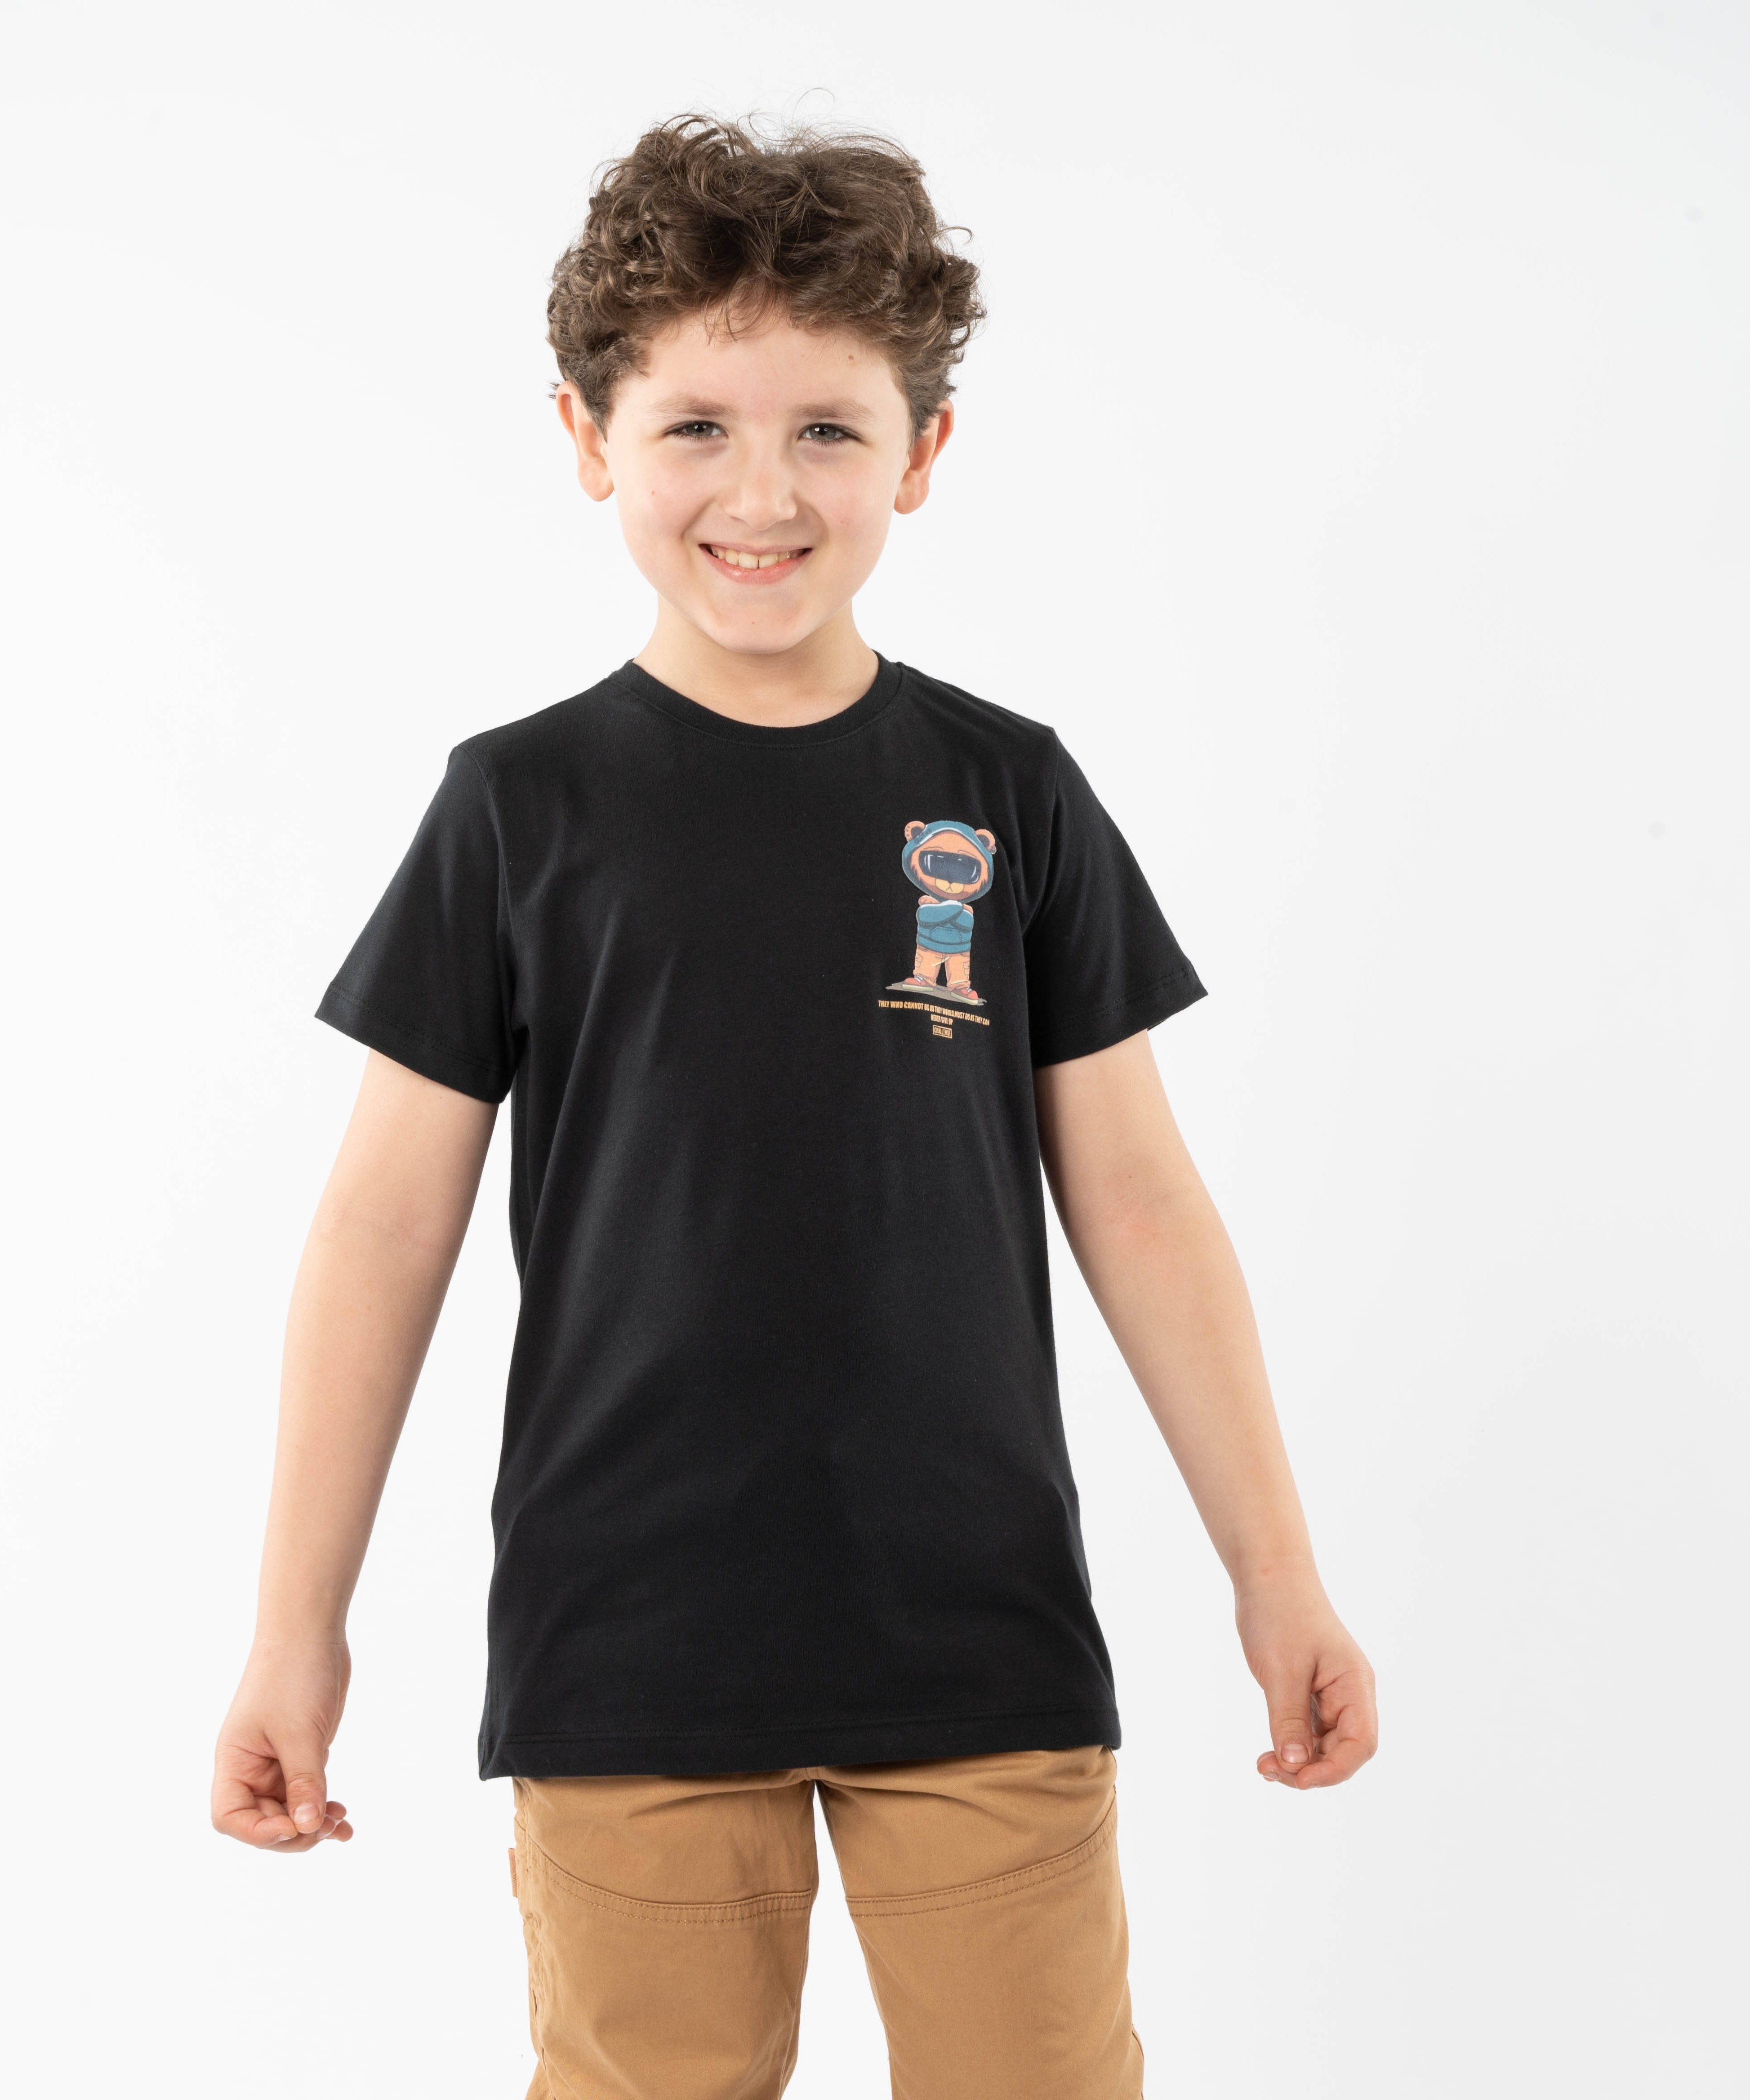 T-Shirt - Boys - Printed